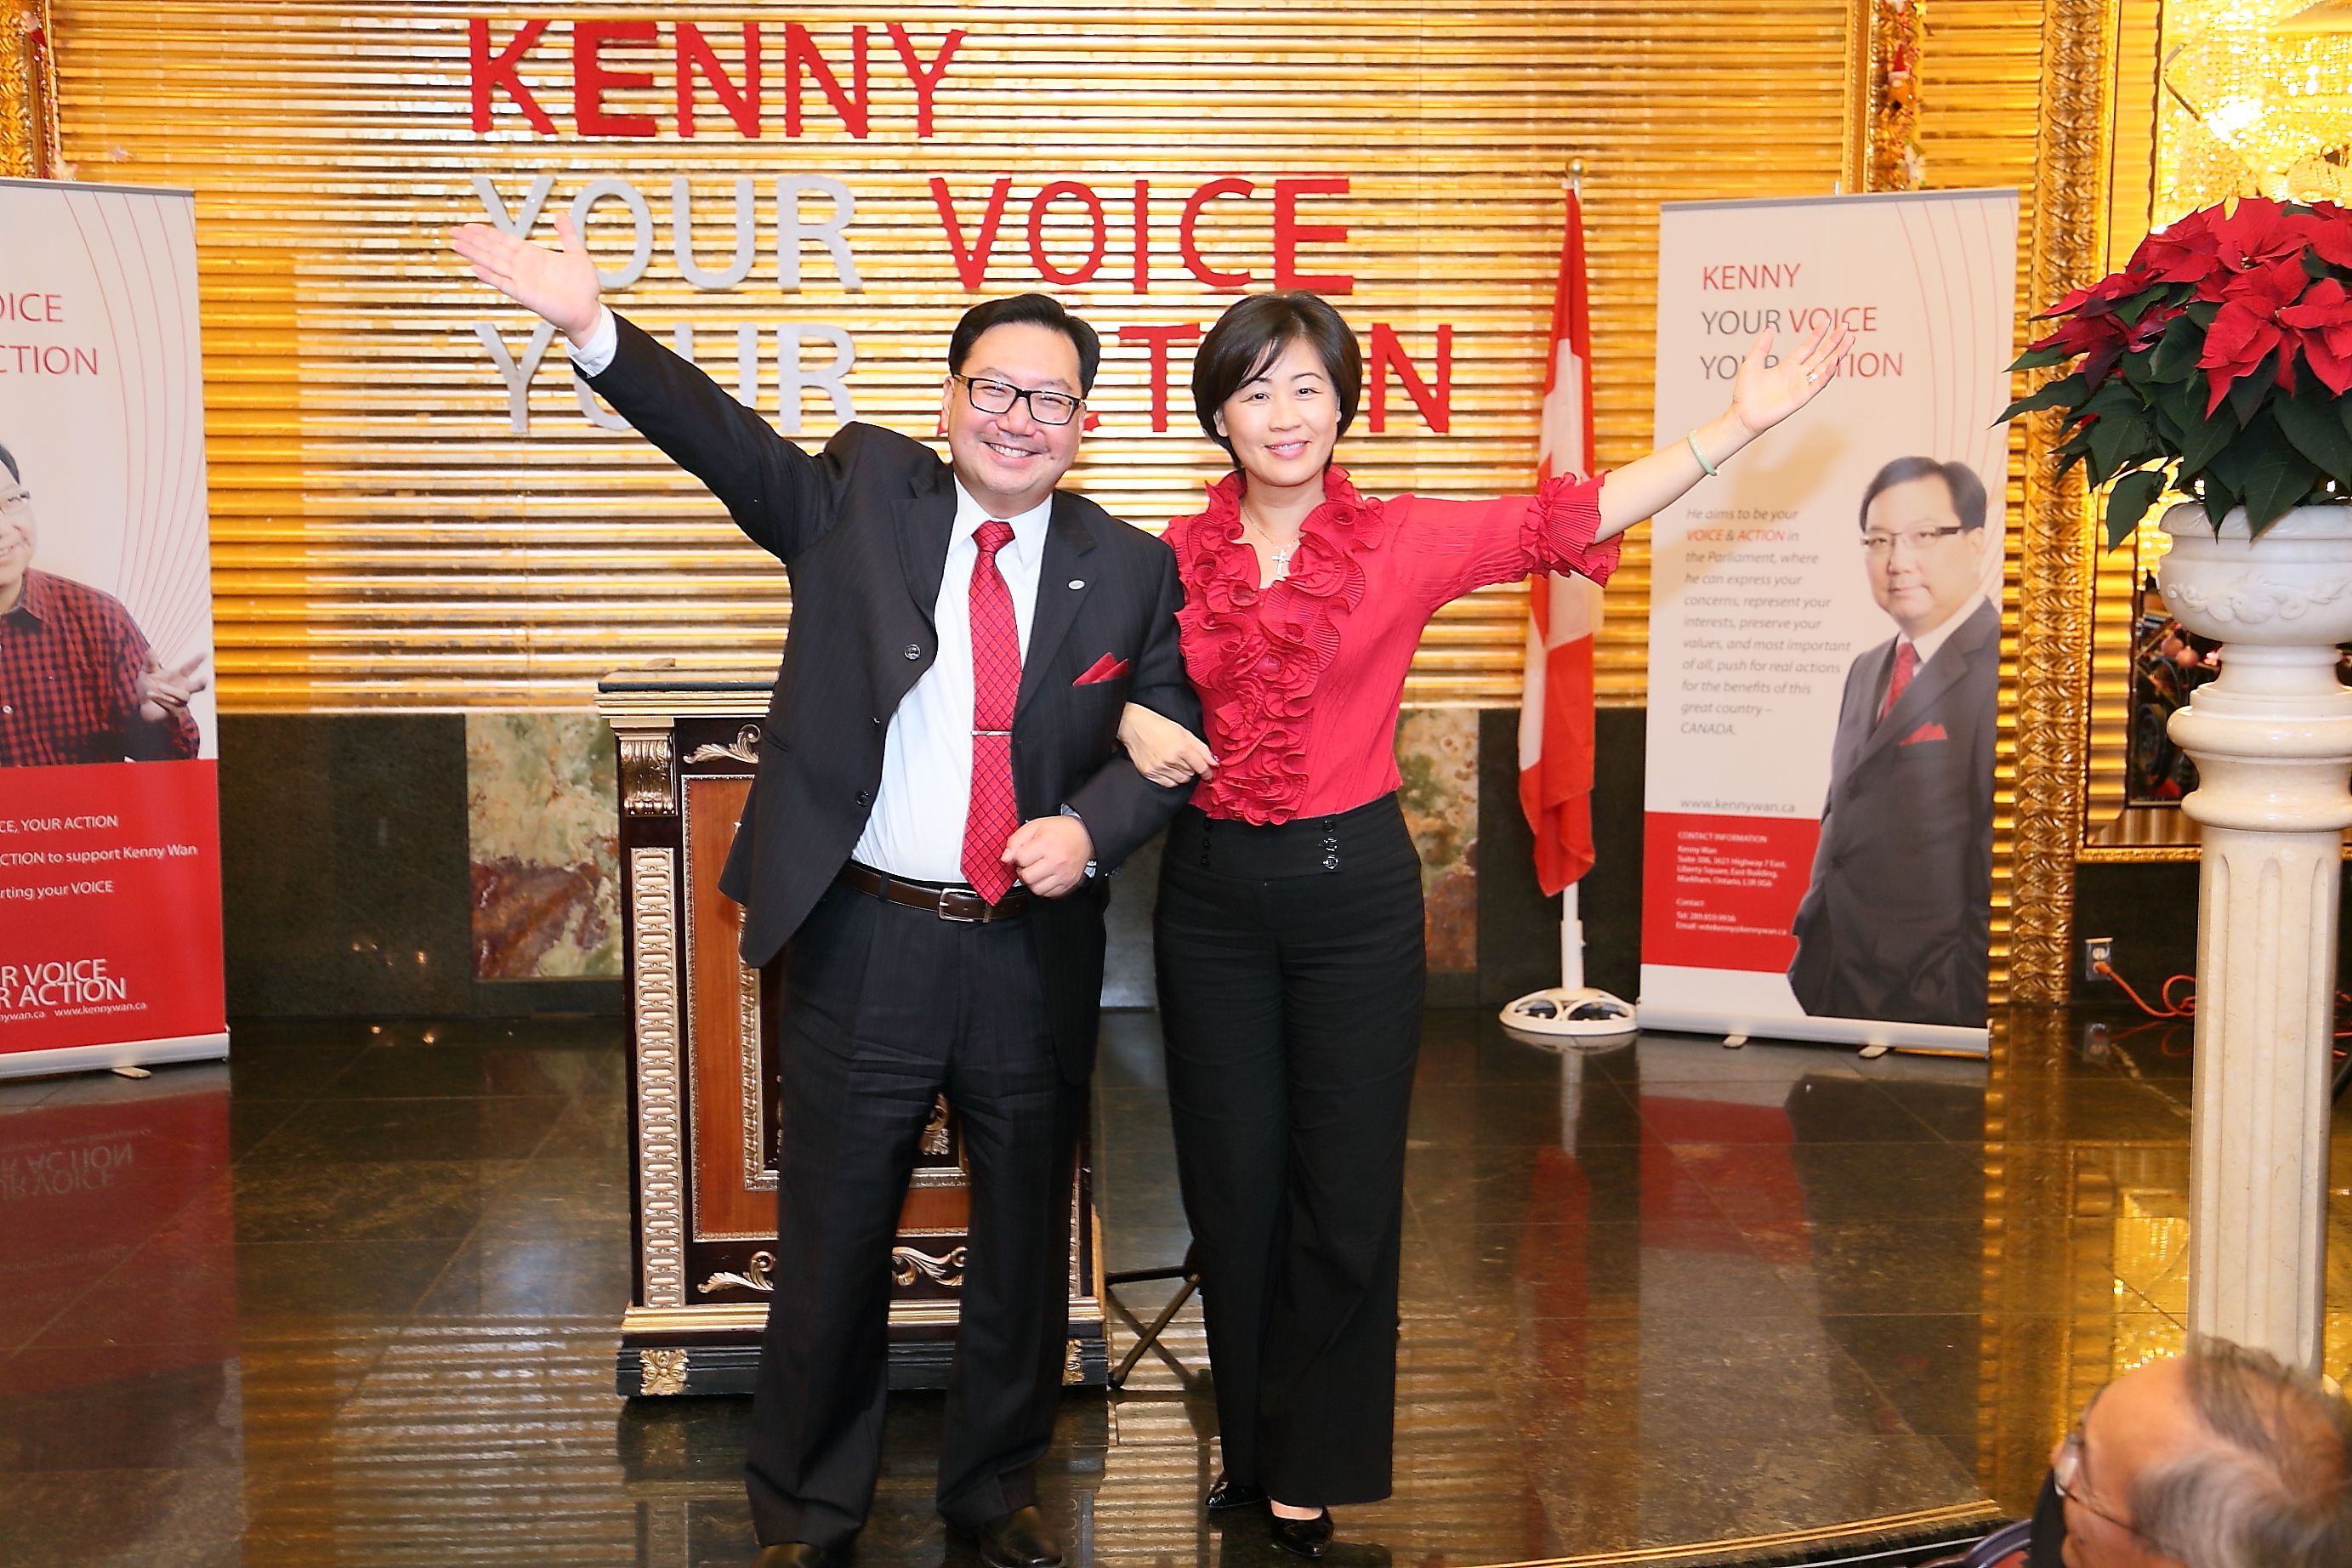 Kenny Wan Fundraising Dinner on Dec 03, 2013